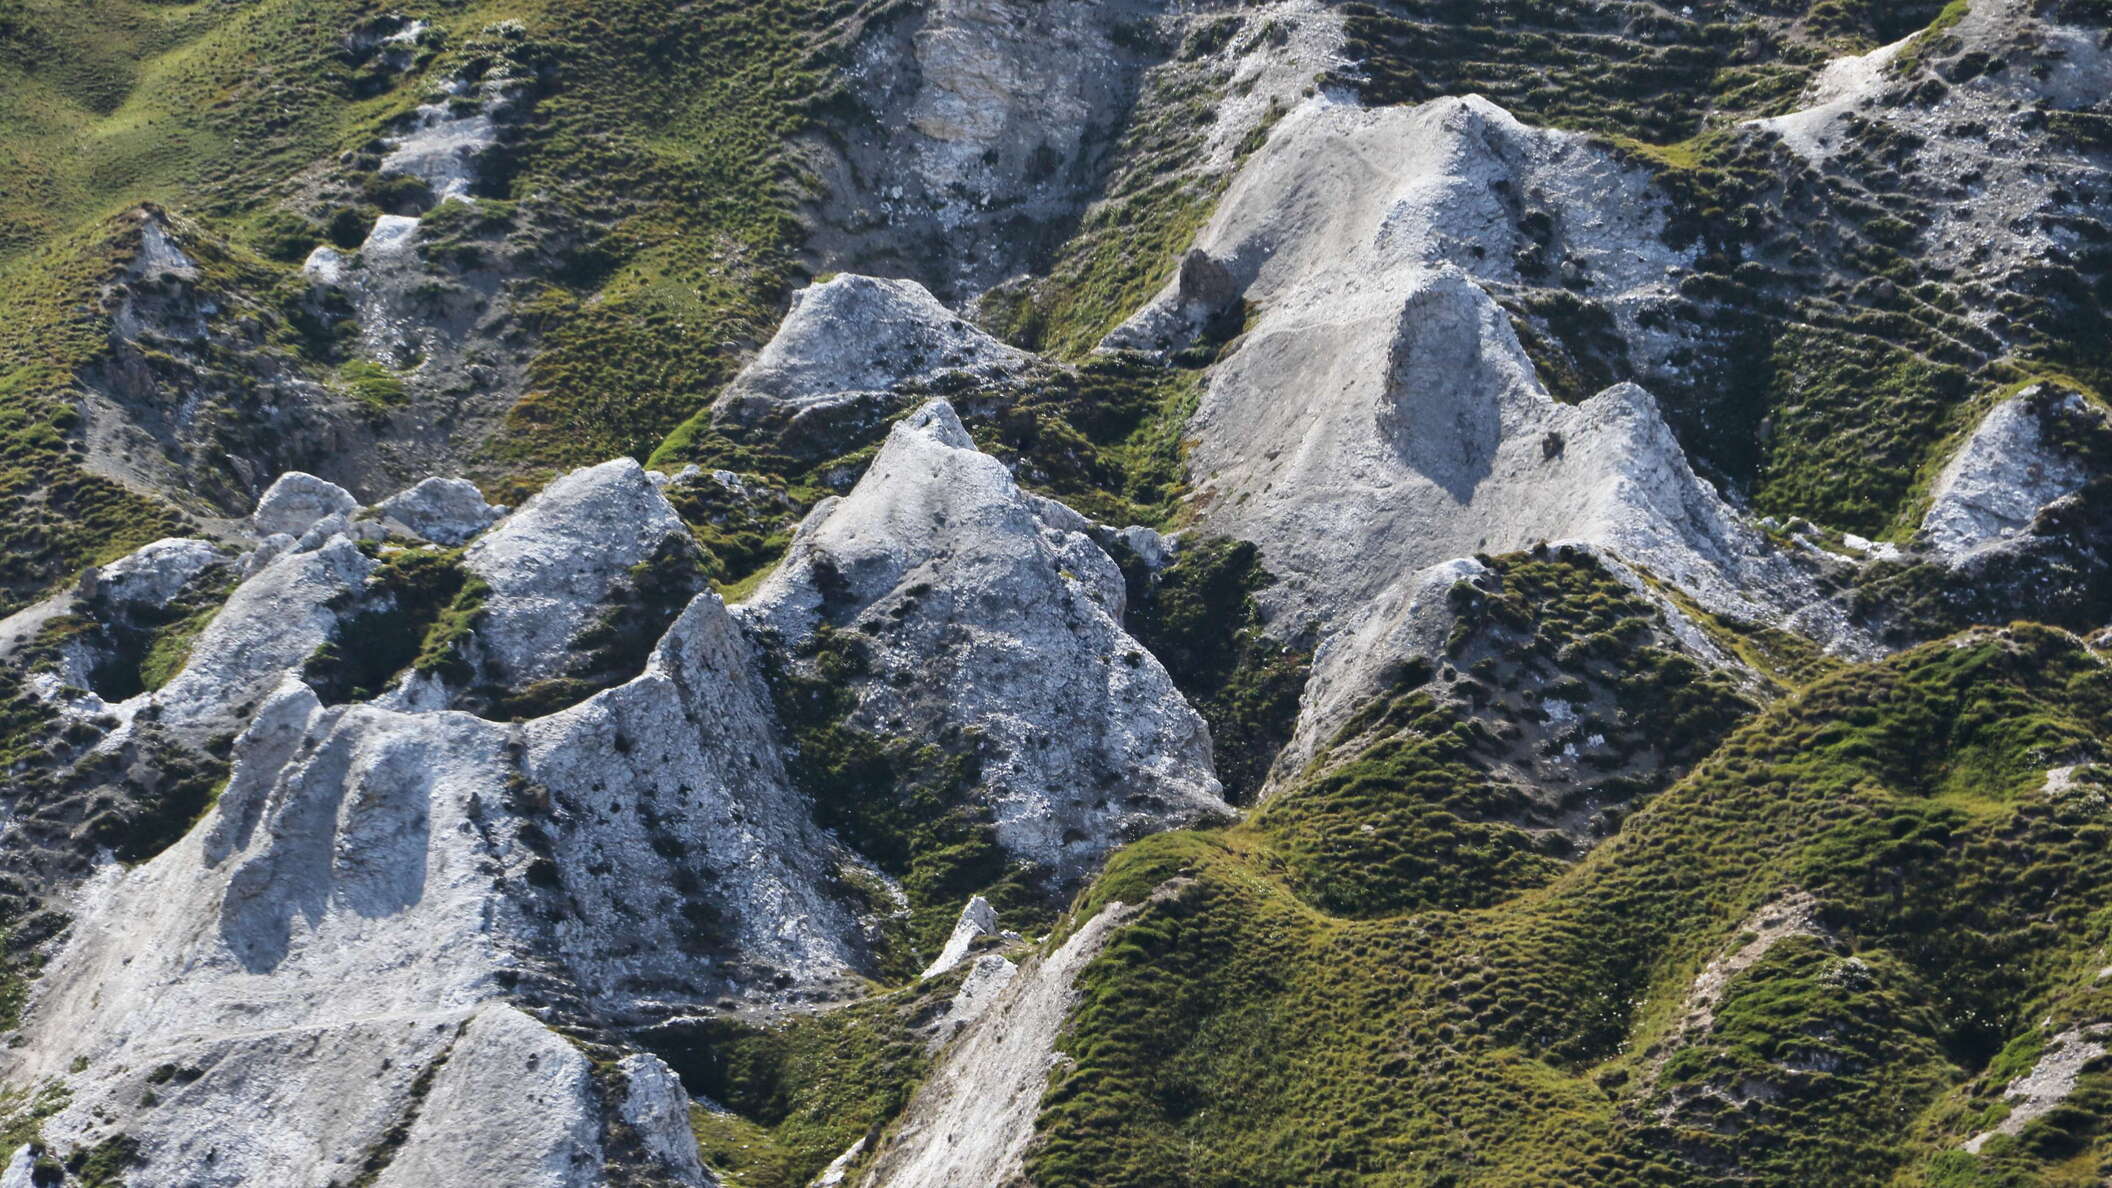 Col du Galibier | Gypsum karst features